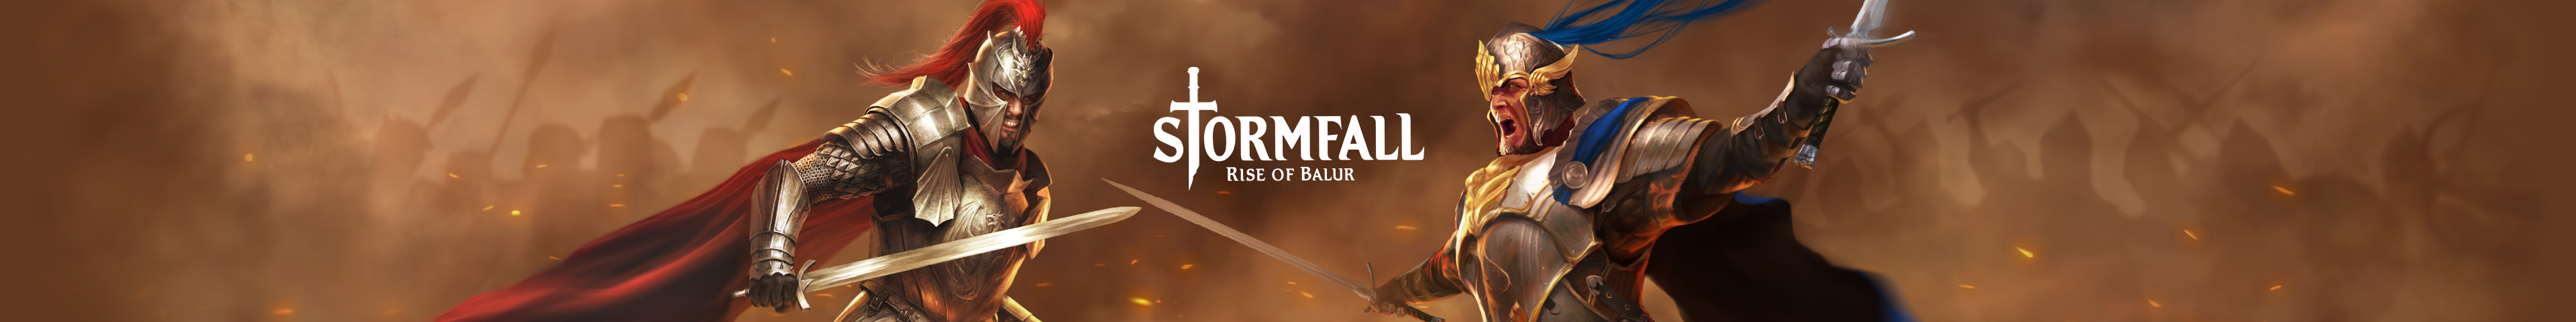 Stormfall: Rise of Balur - Top Secret Update